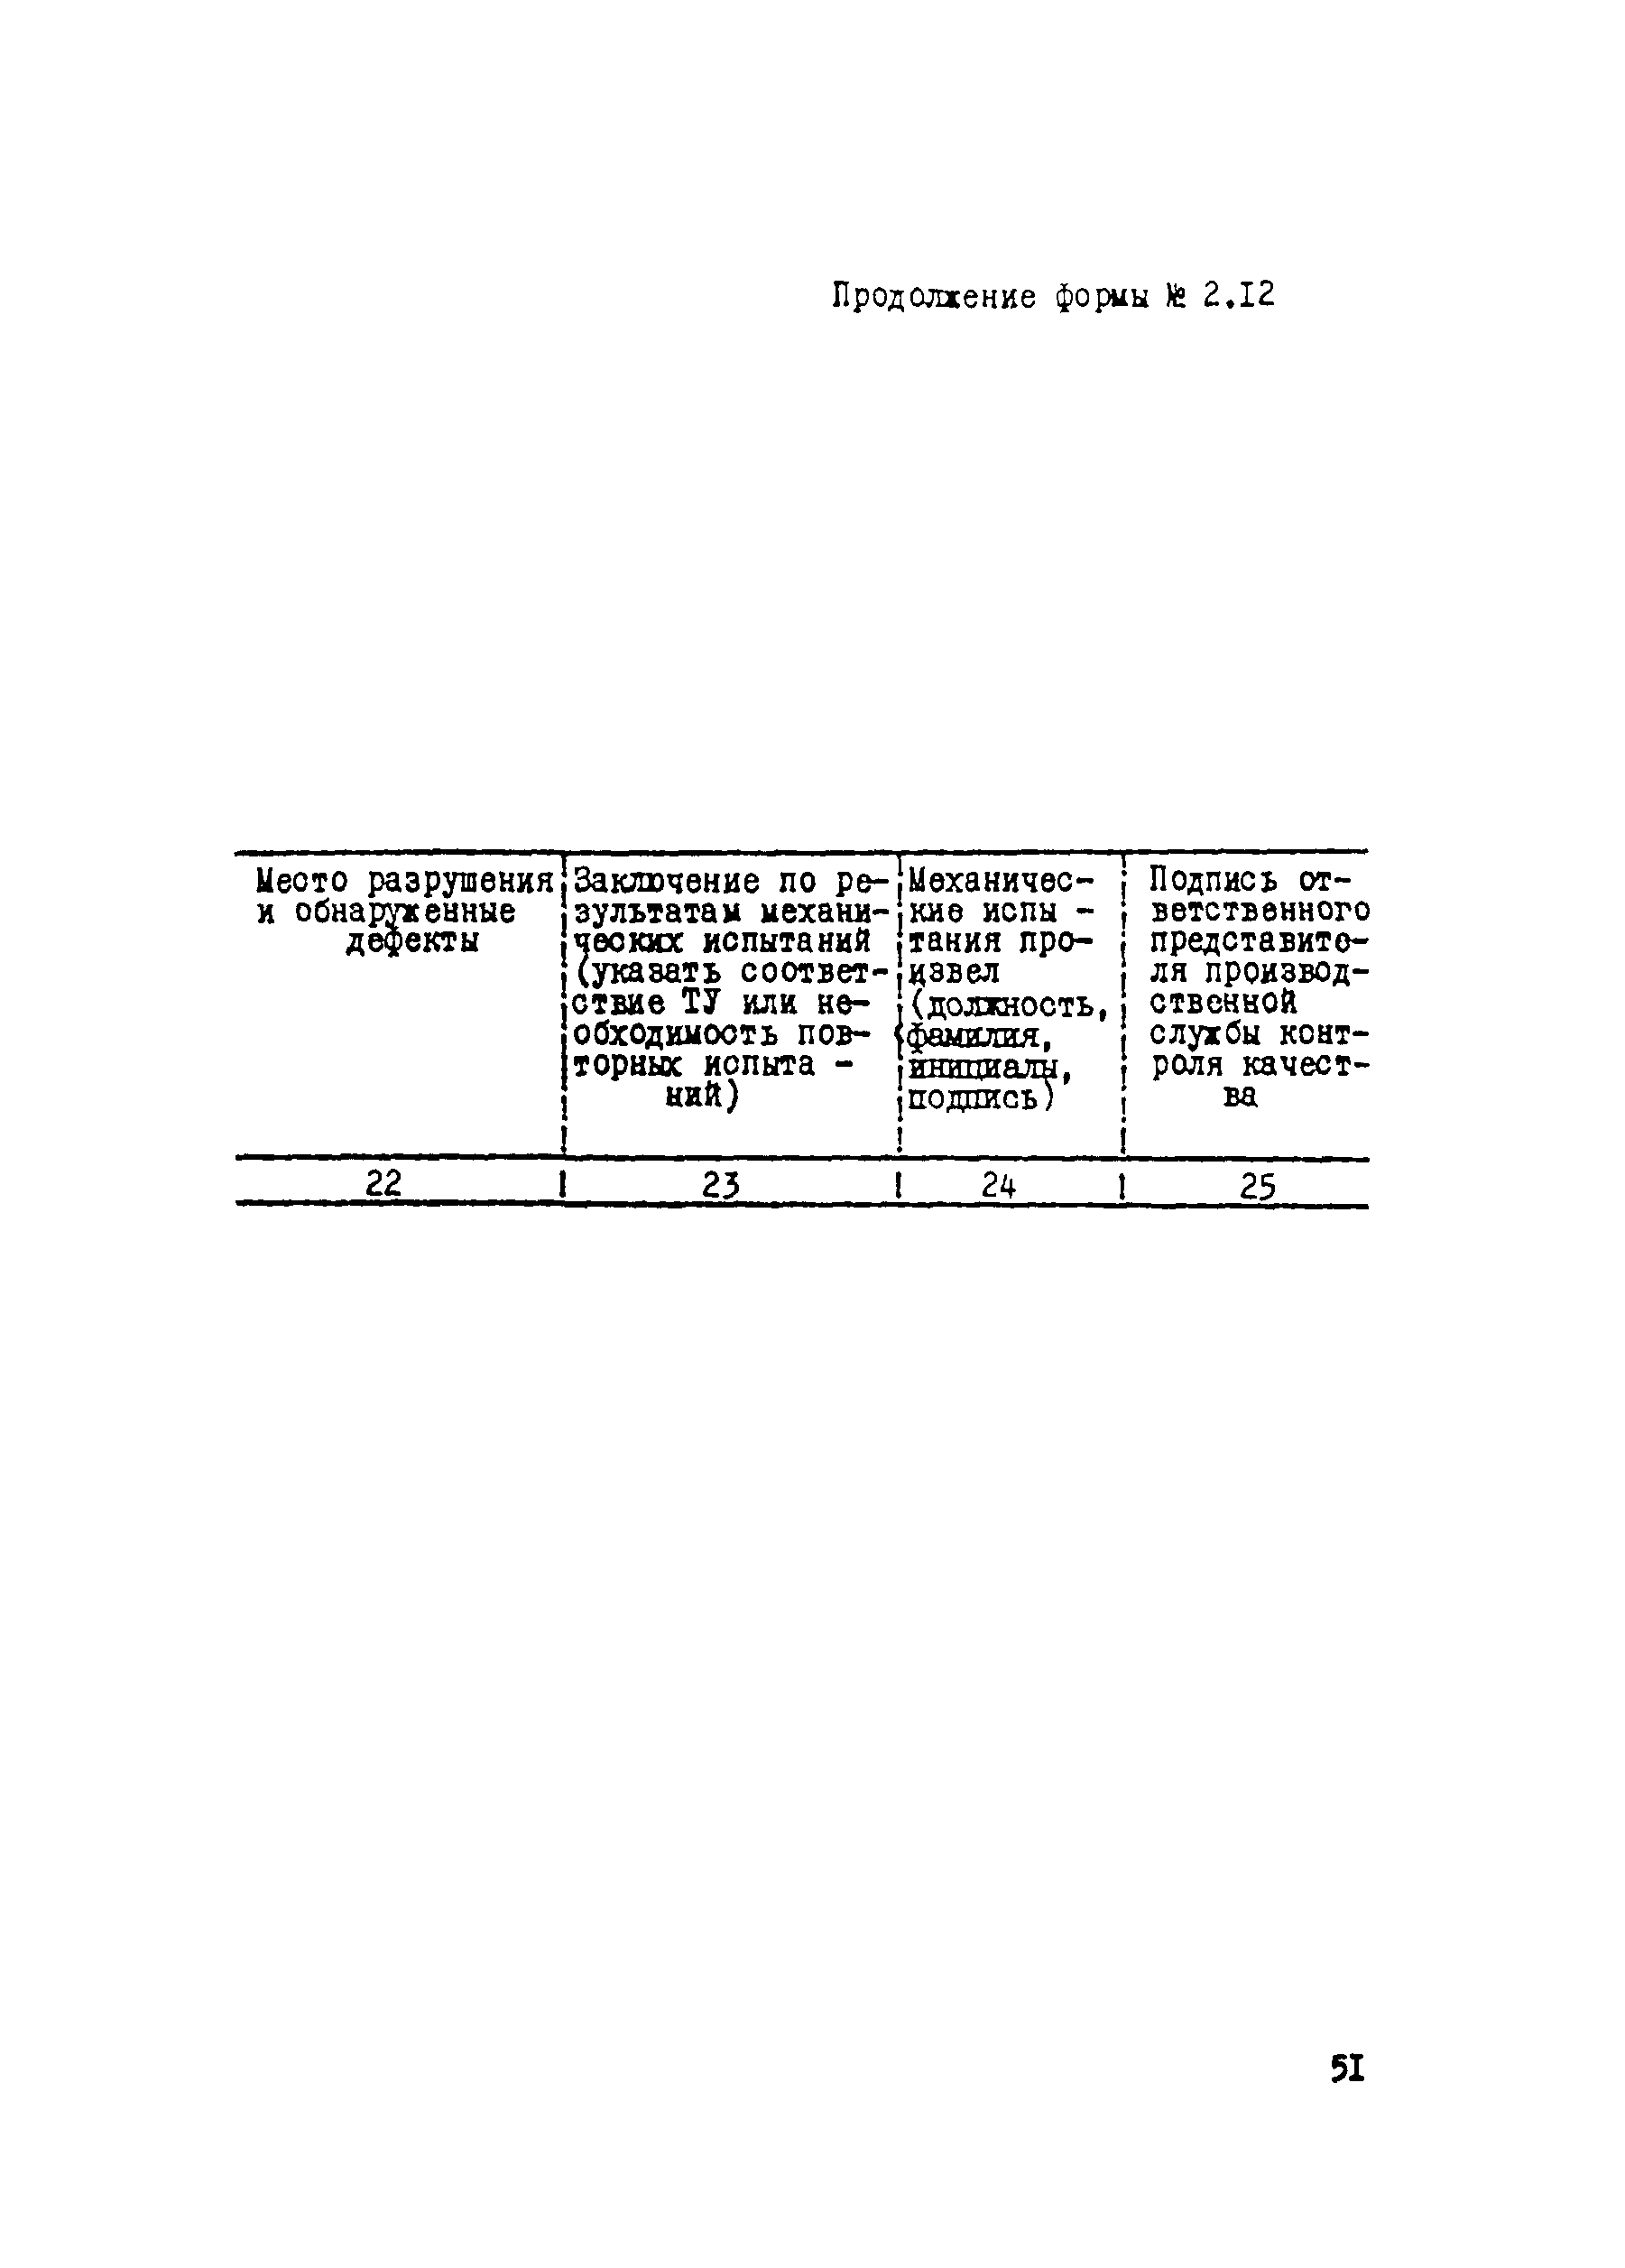 ВСН 012-88